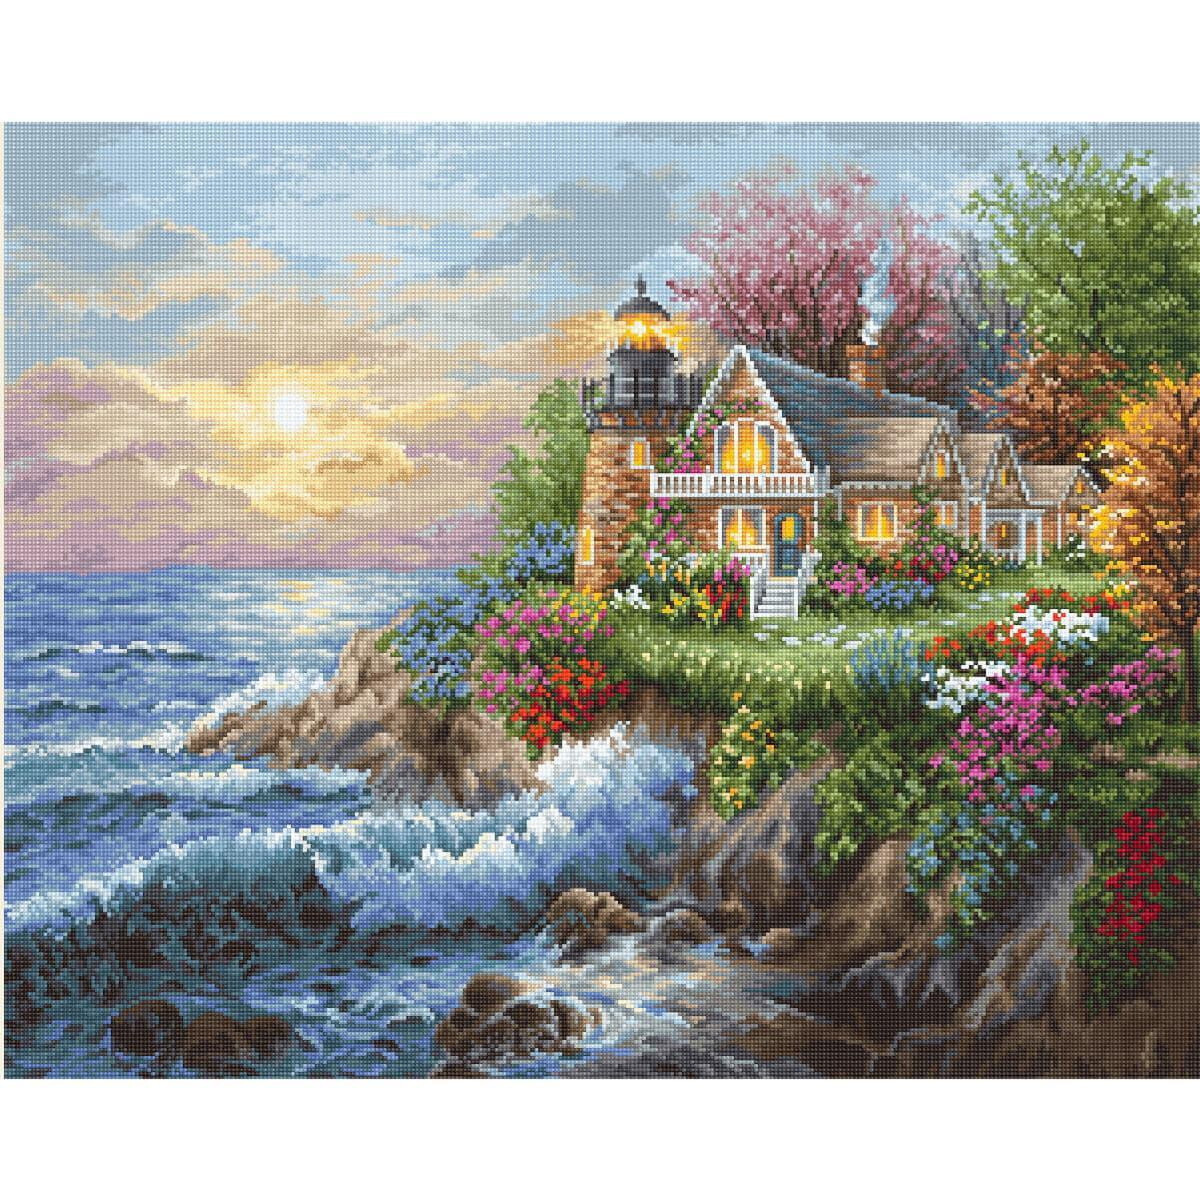 Limage montre une petite maison au bord de la mer avec un...